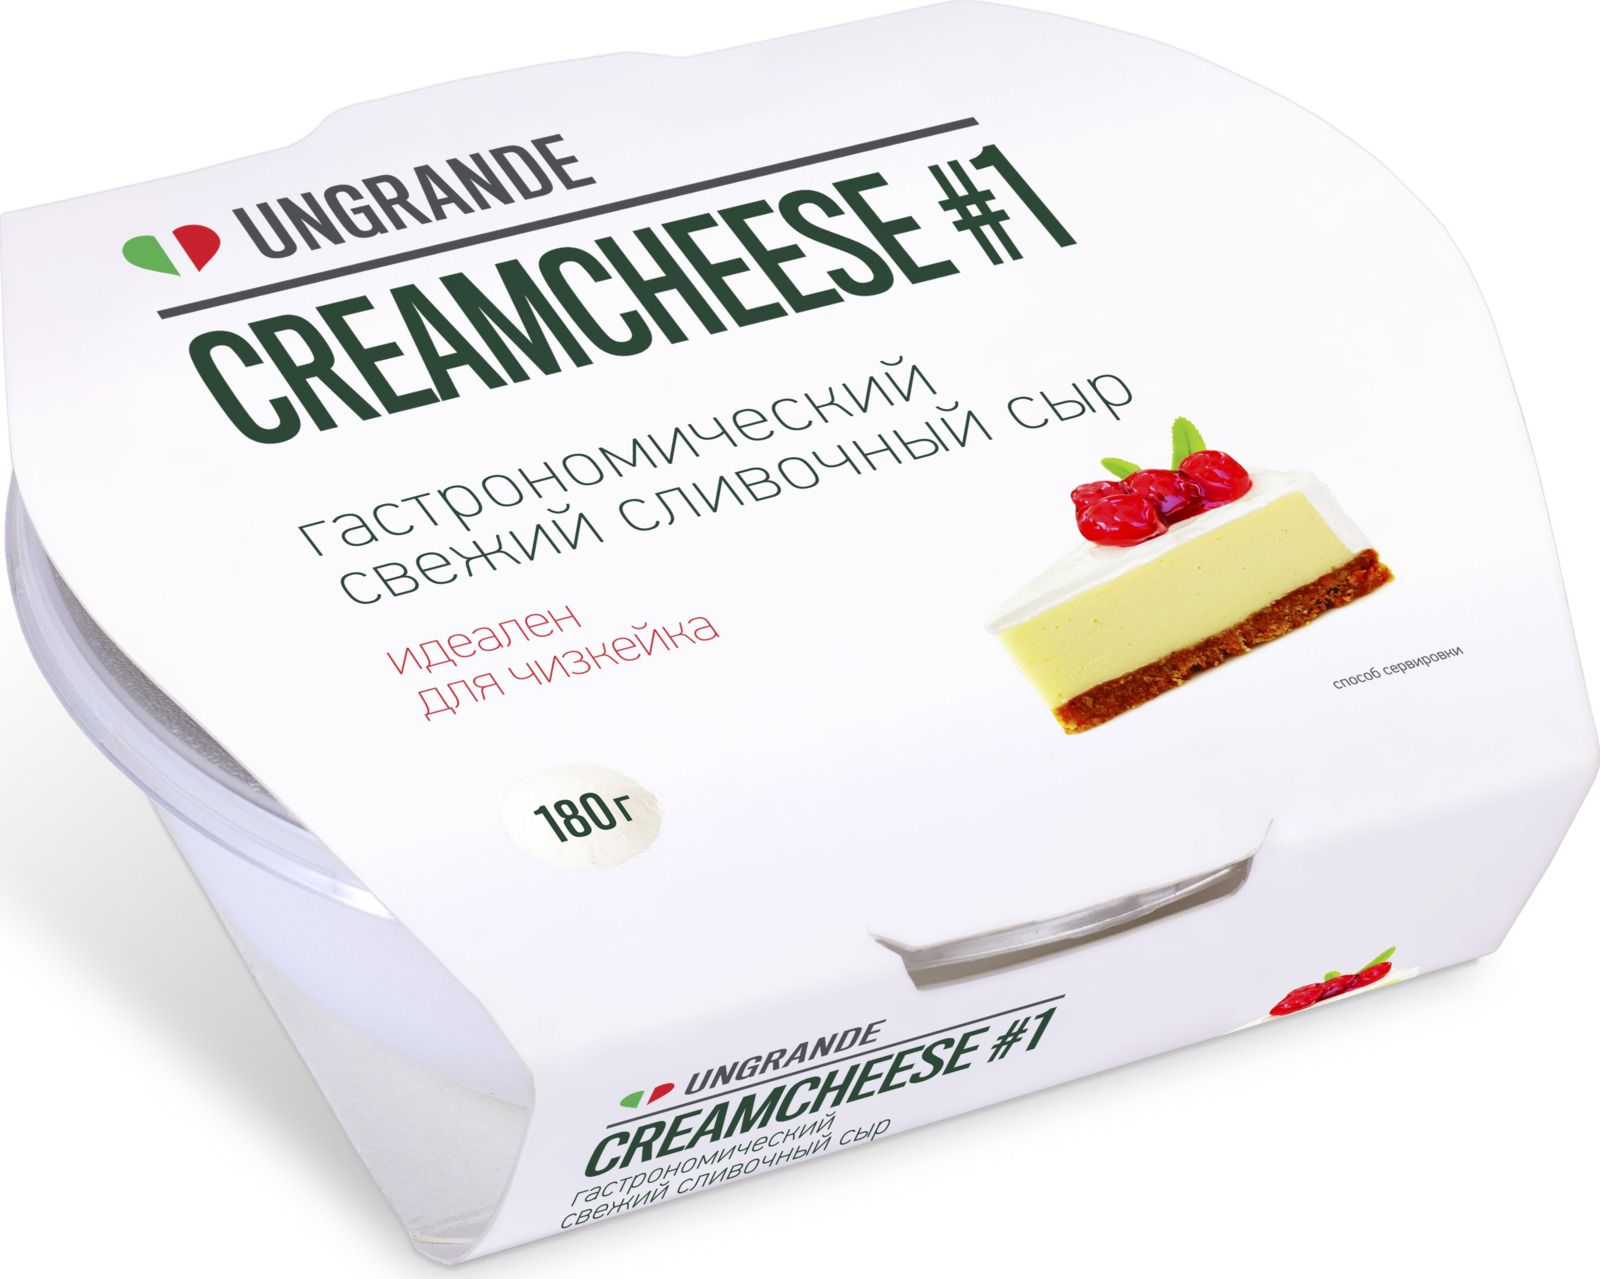 Unagrande  Creamcheese  1  70%, 180 